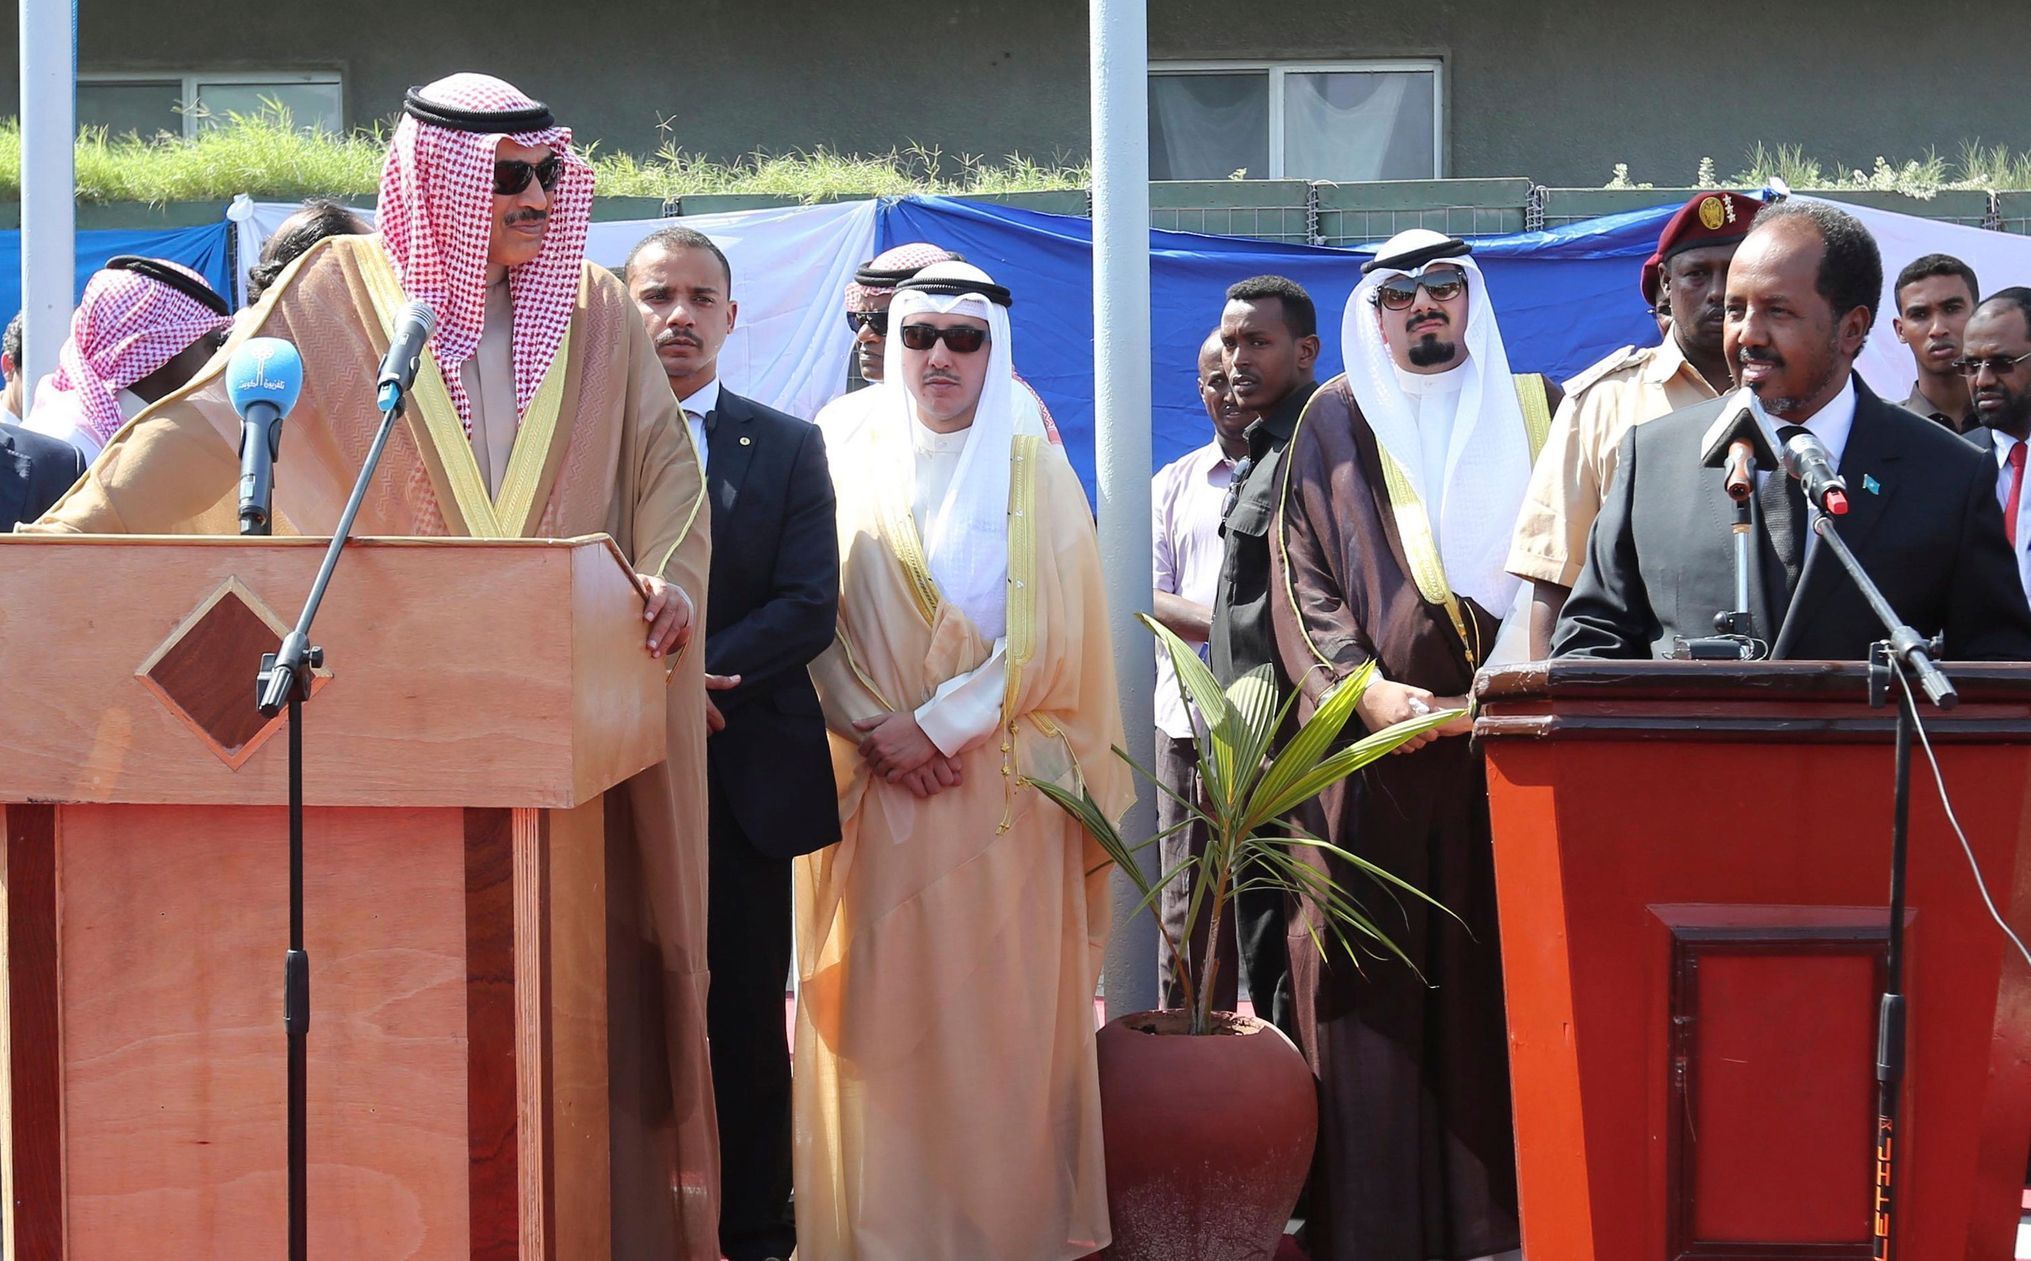 Somálský prezident Hassan Sheikh Mohamoud (vpravo) s kuvajtským minitrem zahraničí